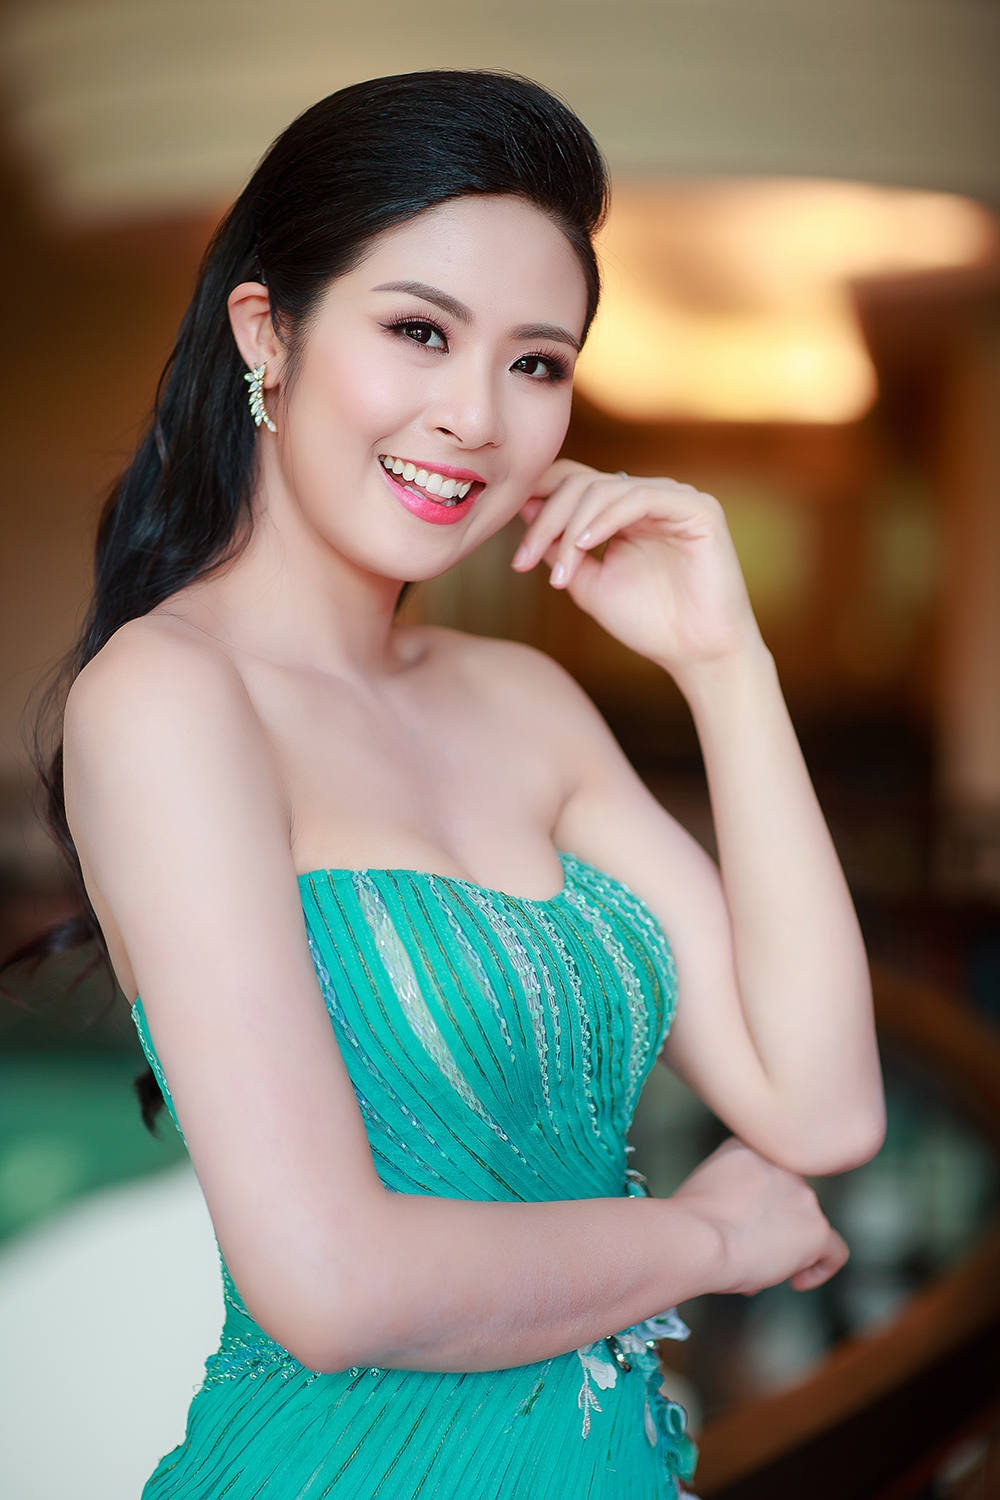  Là một trong những người đẹp hiếm hoi không bị vướng phải các scandal, Hoa hậu Ngọc Hân ngày càng đắt show trên ghế nóng